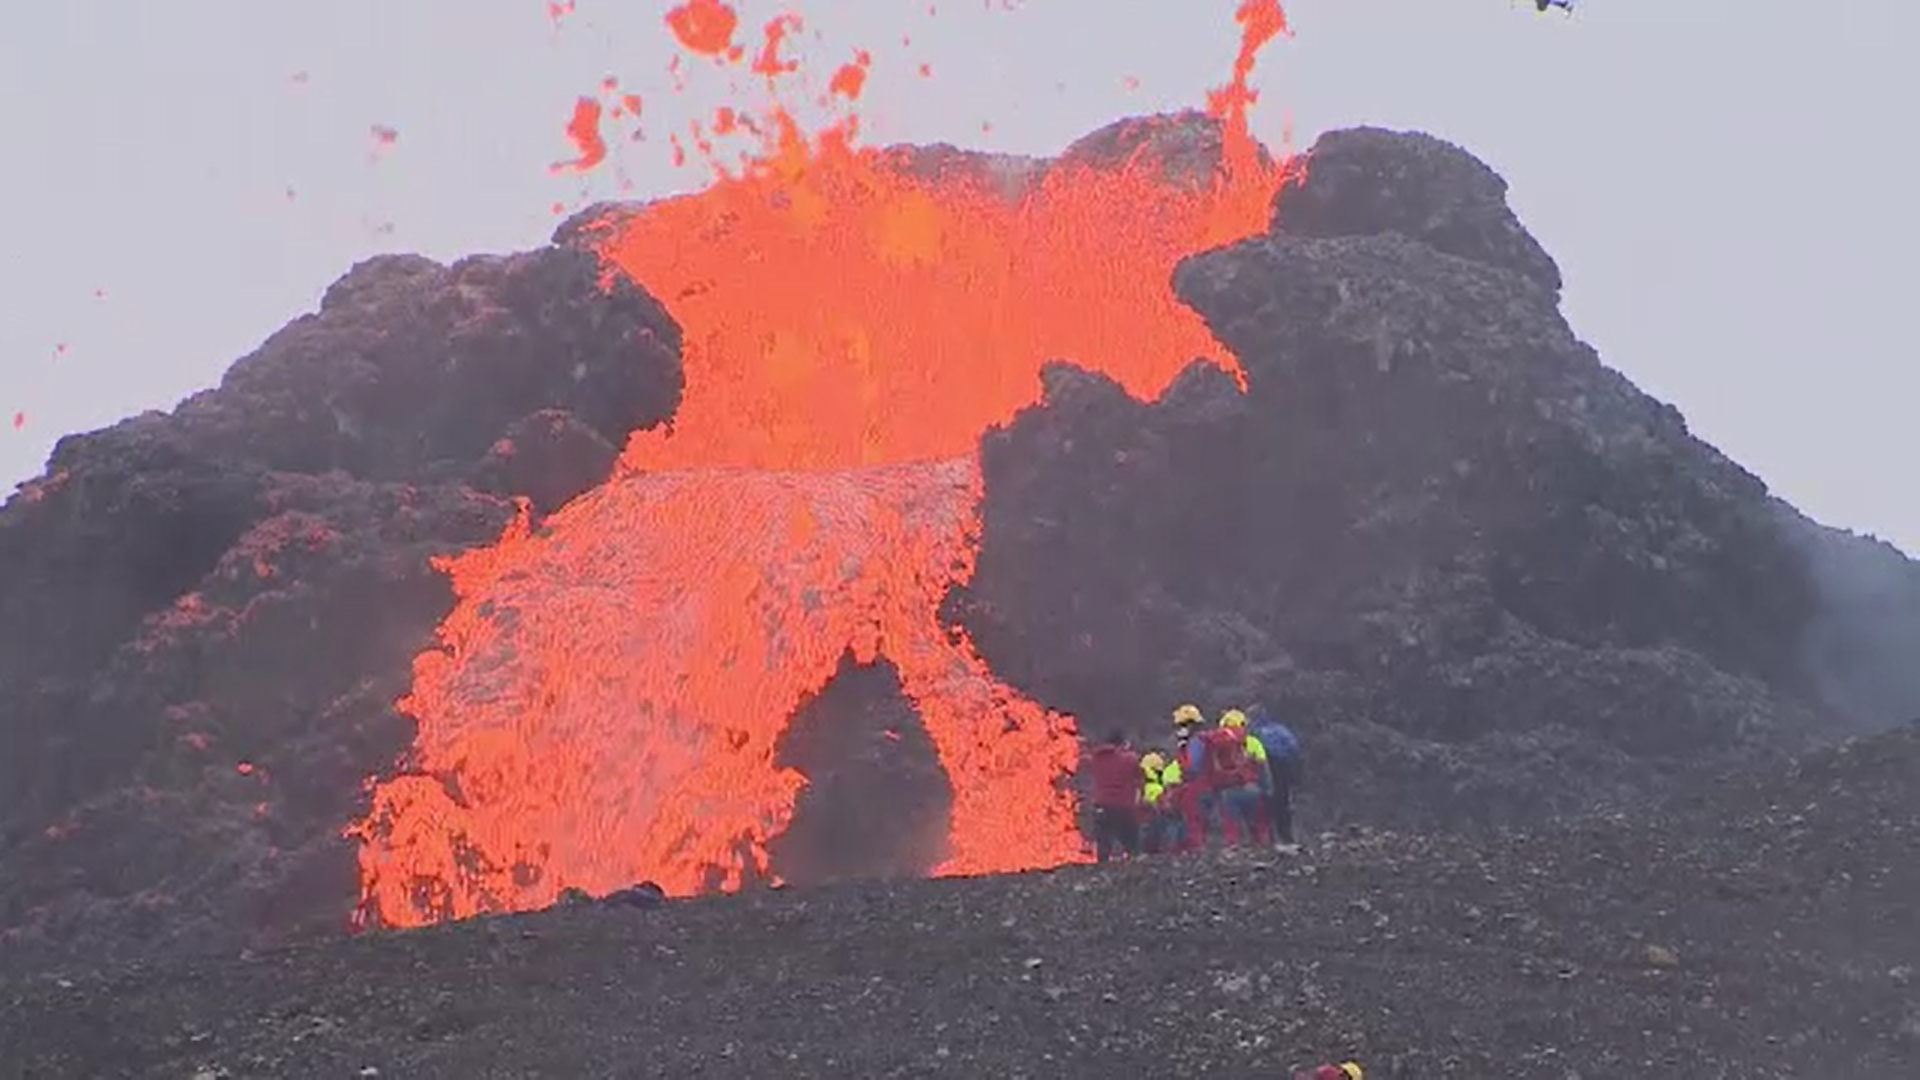 Un bărbat a prăjit cârnați pe lava unui vulcan în erupție. Mai mulți turiști și-au riscat viața pentru poze